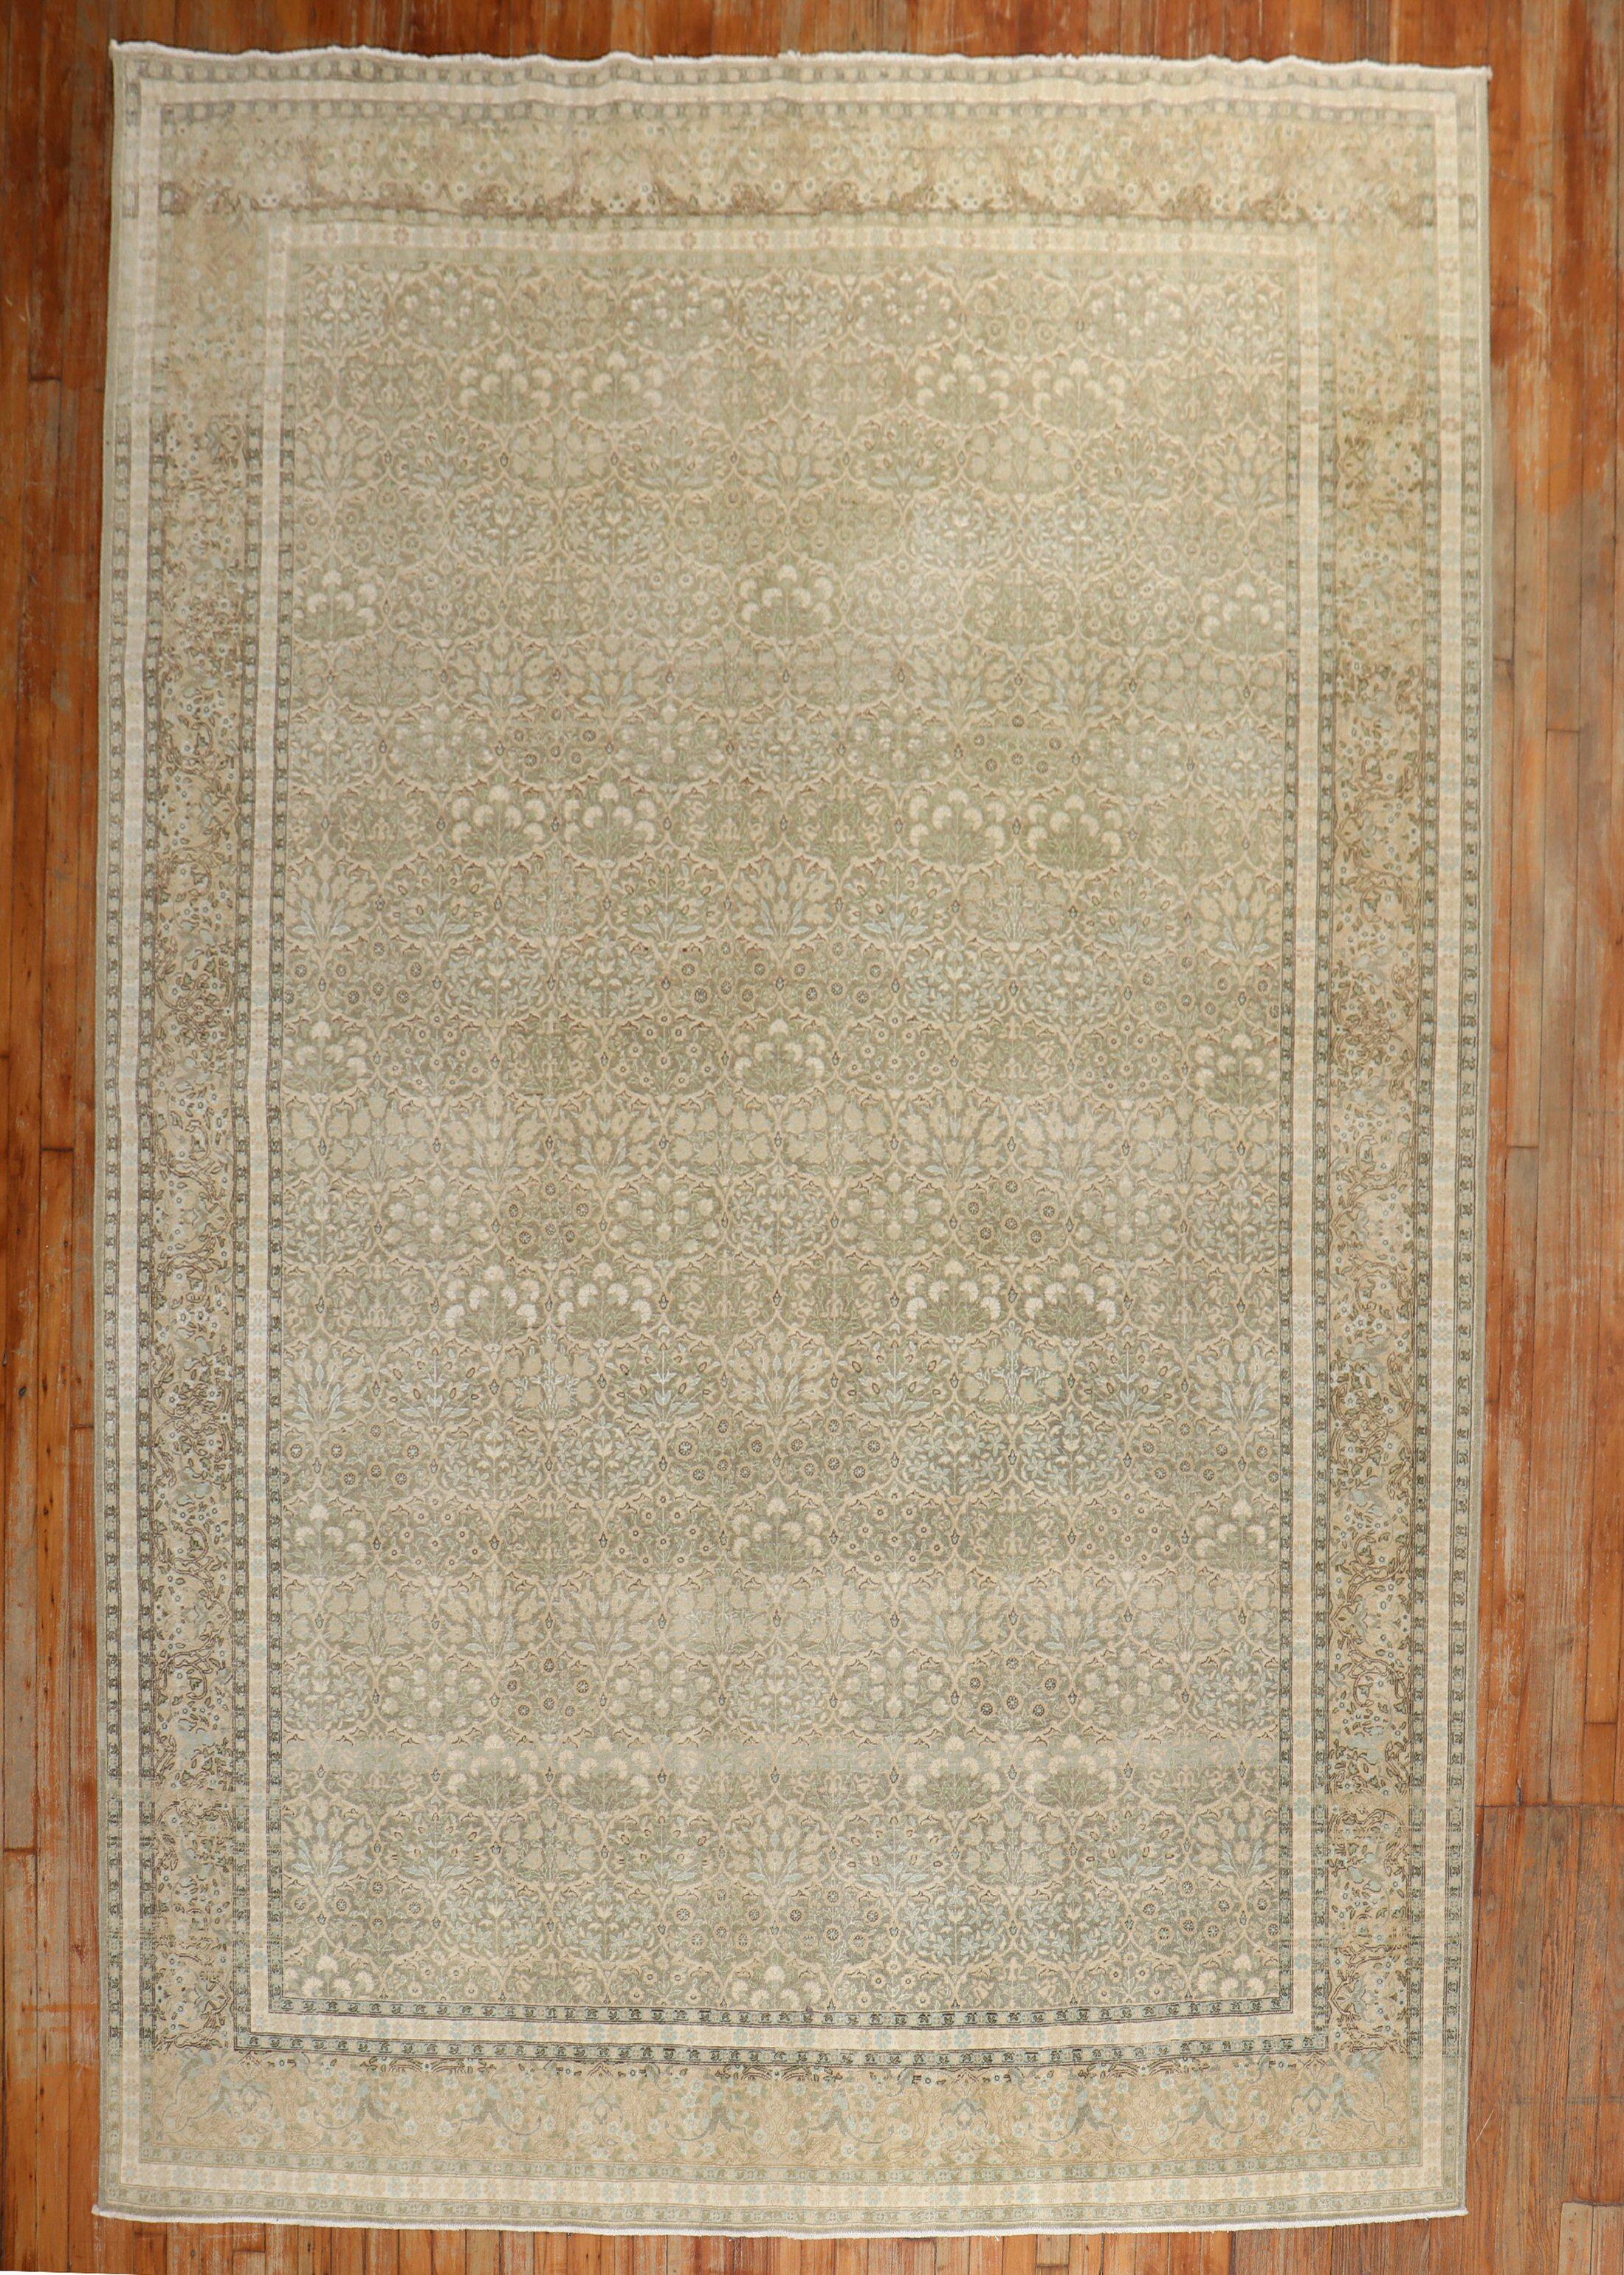 Tabriz persan du milieu du 20e siècle  tapis à motifs floraux dans des tons neutres

Mesures : 7'10'' x 11'3''.